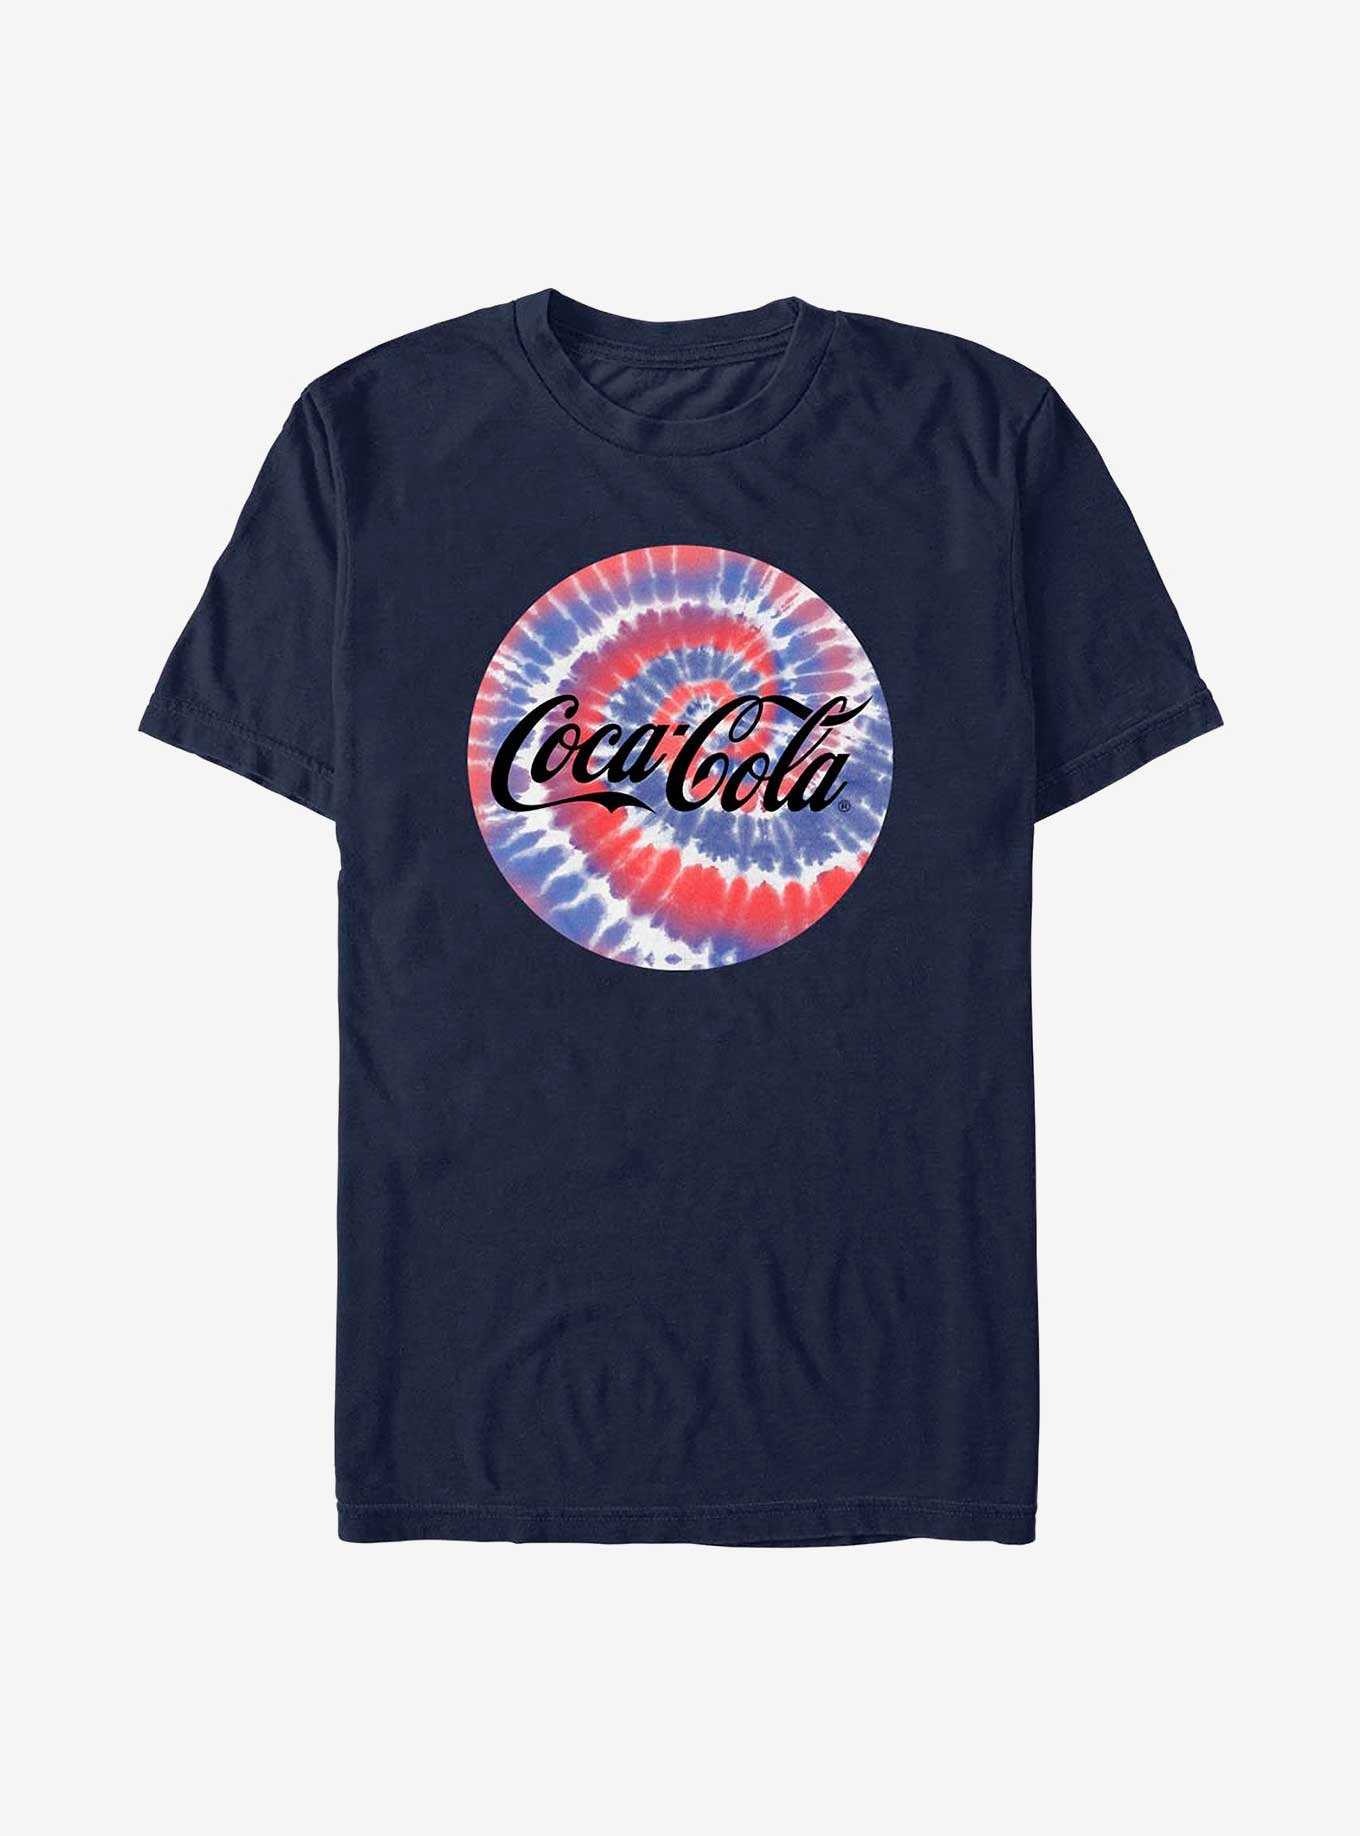 Coca-Cola Americana Tiedye Coke T-Shirt, , hi-res